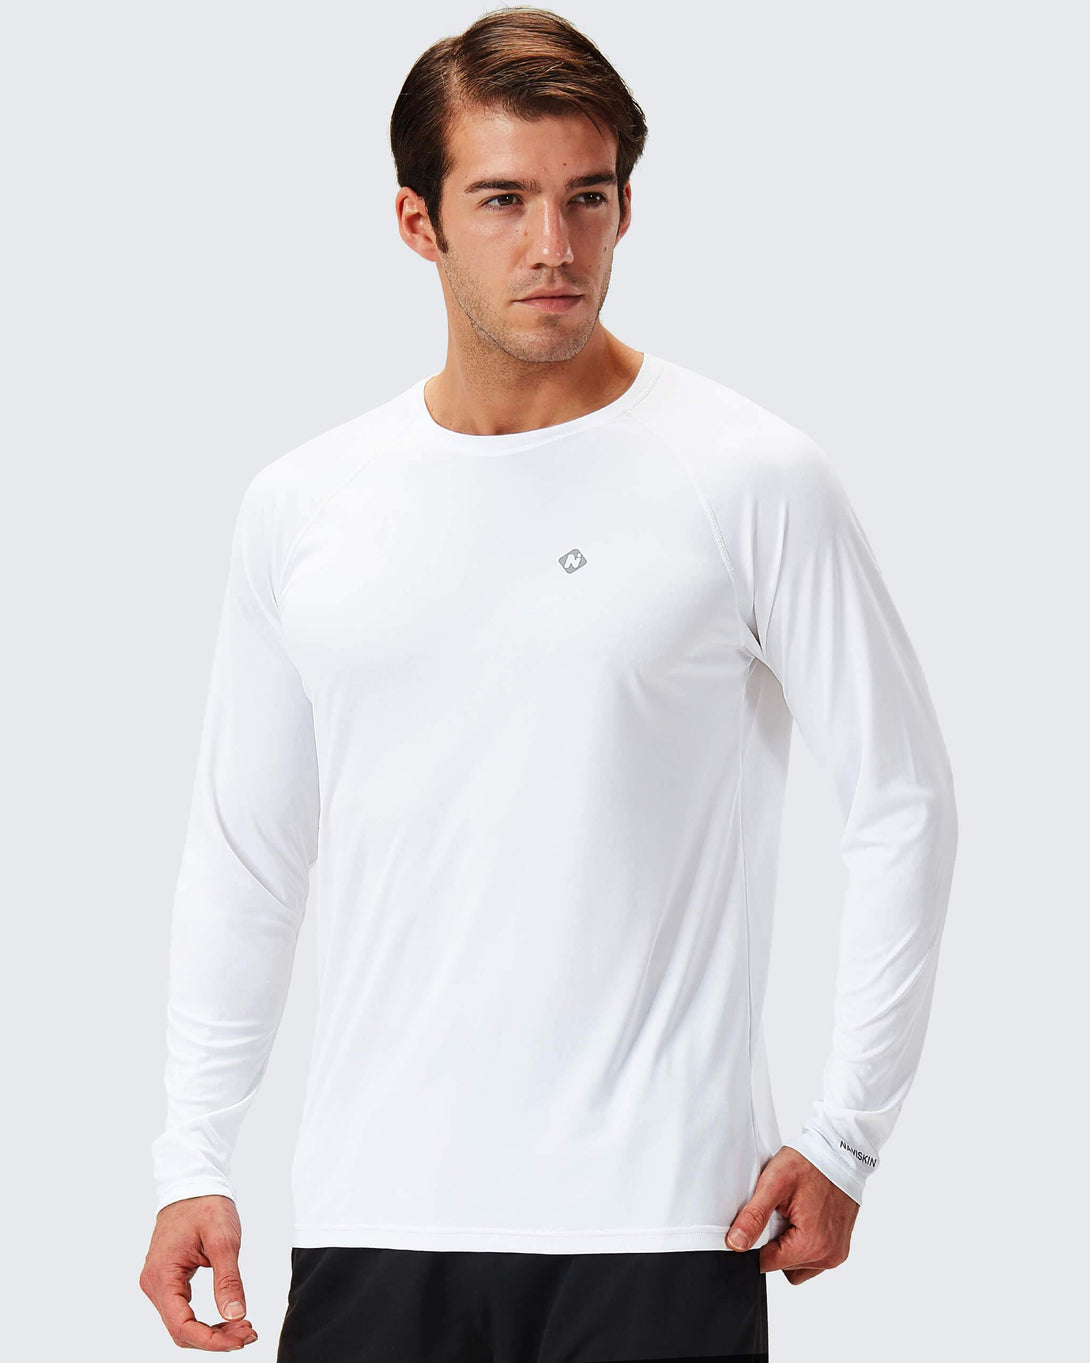 UPF 50+Shirt white